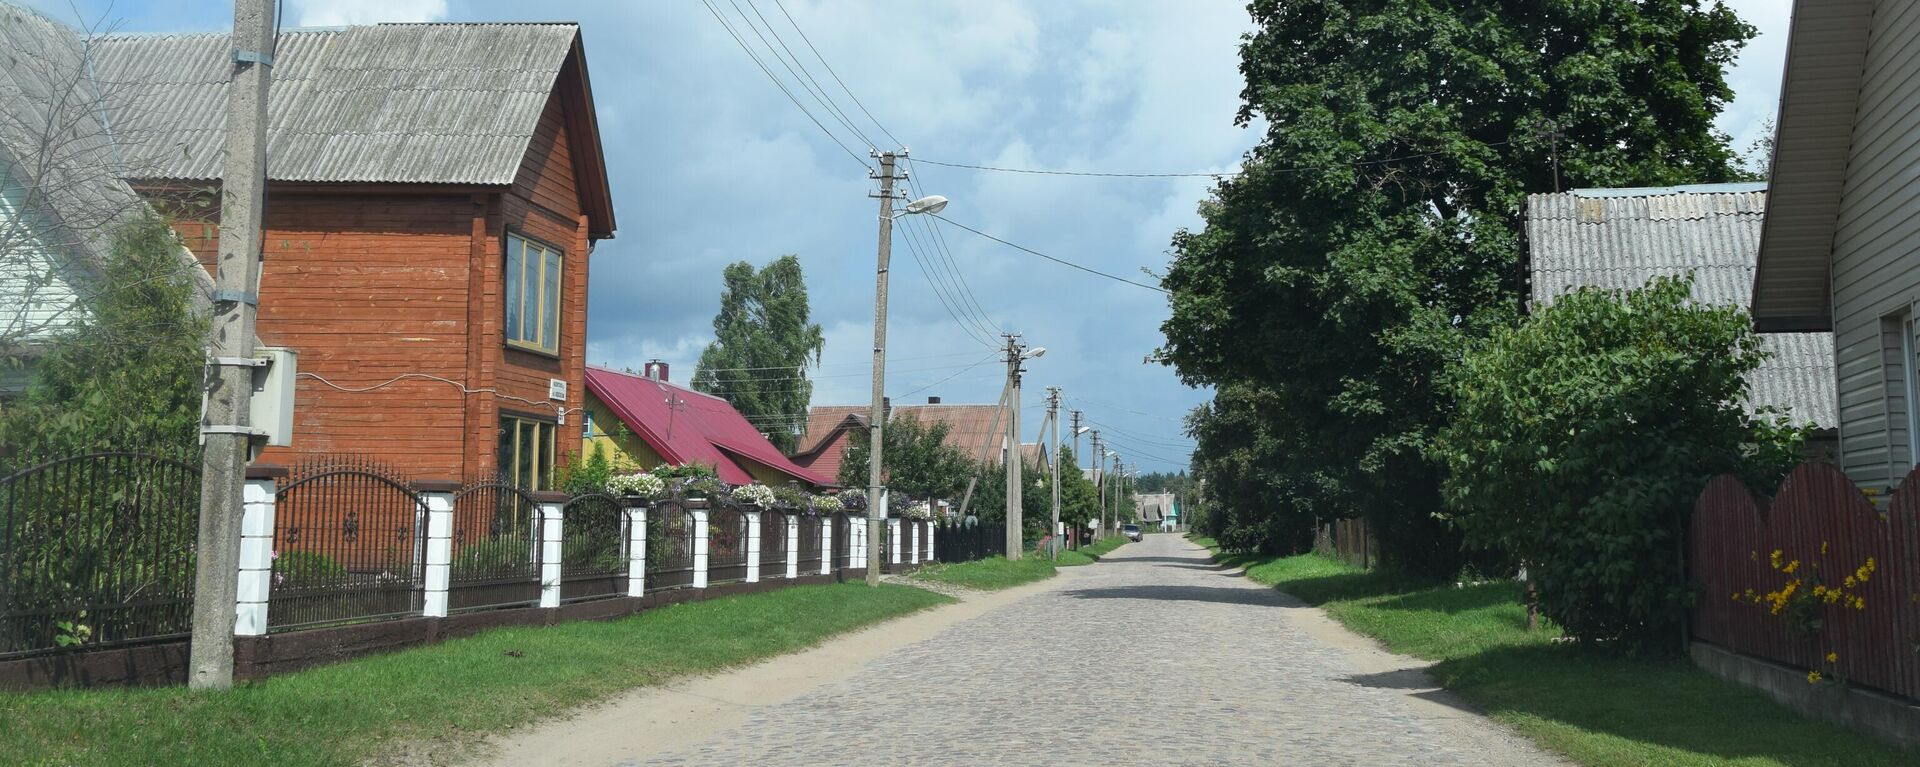 Улица в деревне Руднинкай в Шальчининкайском районе Литвы - Sputnik Литва, 1920, 07.09.2021